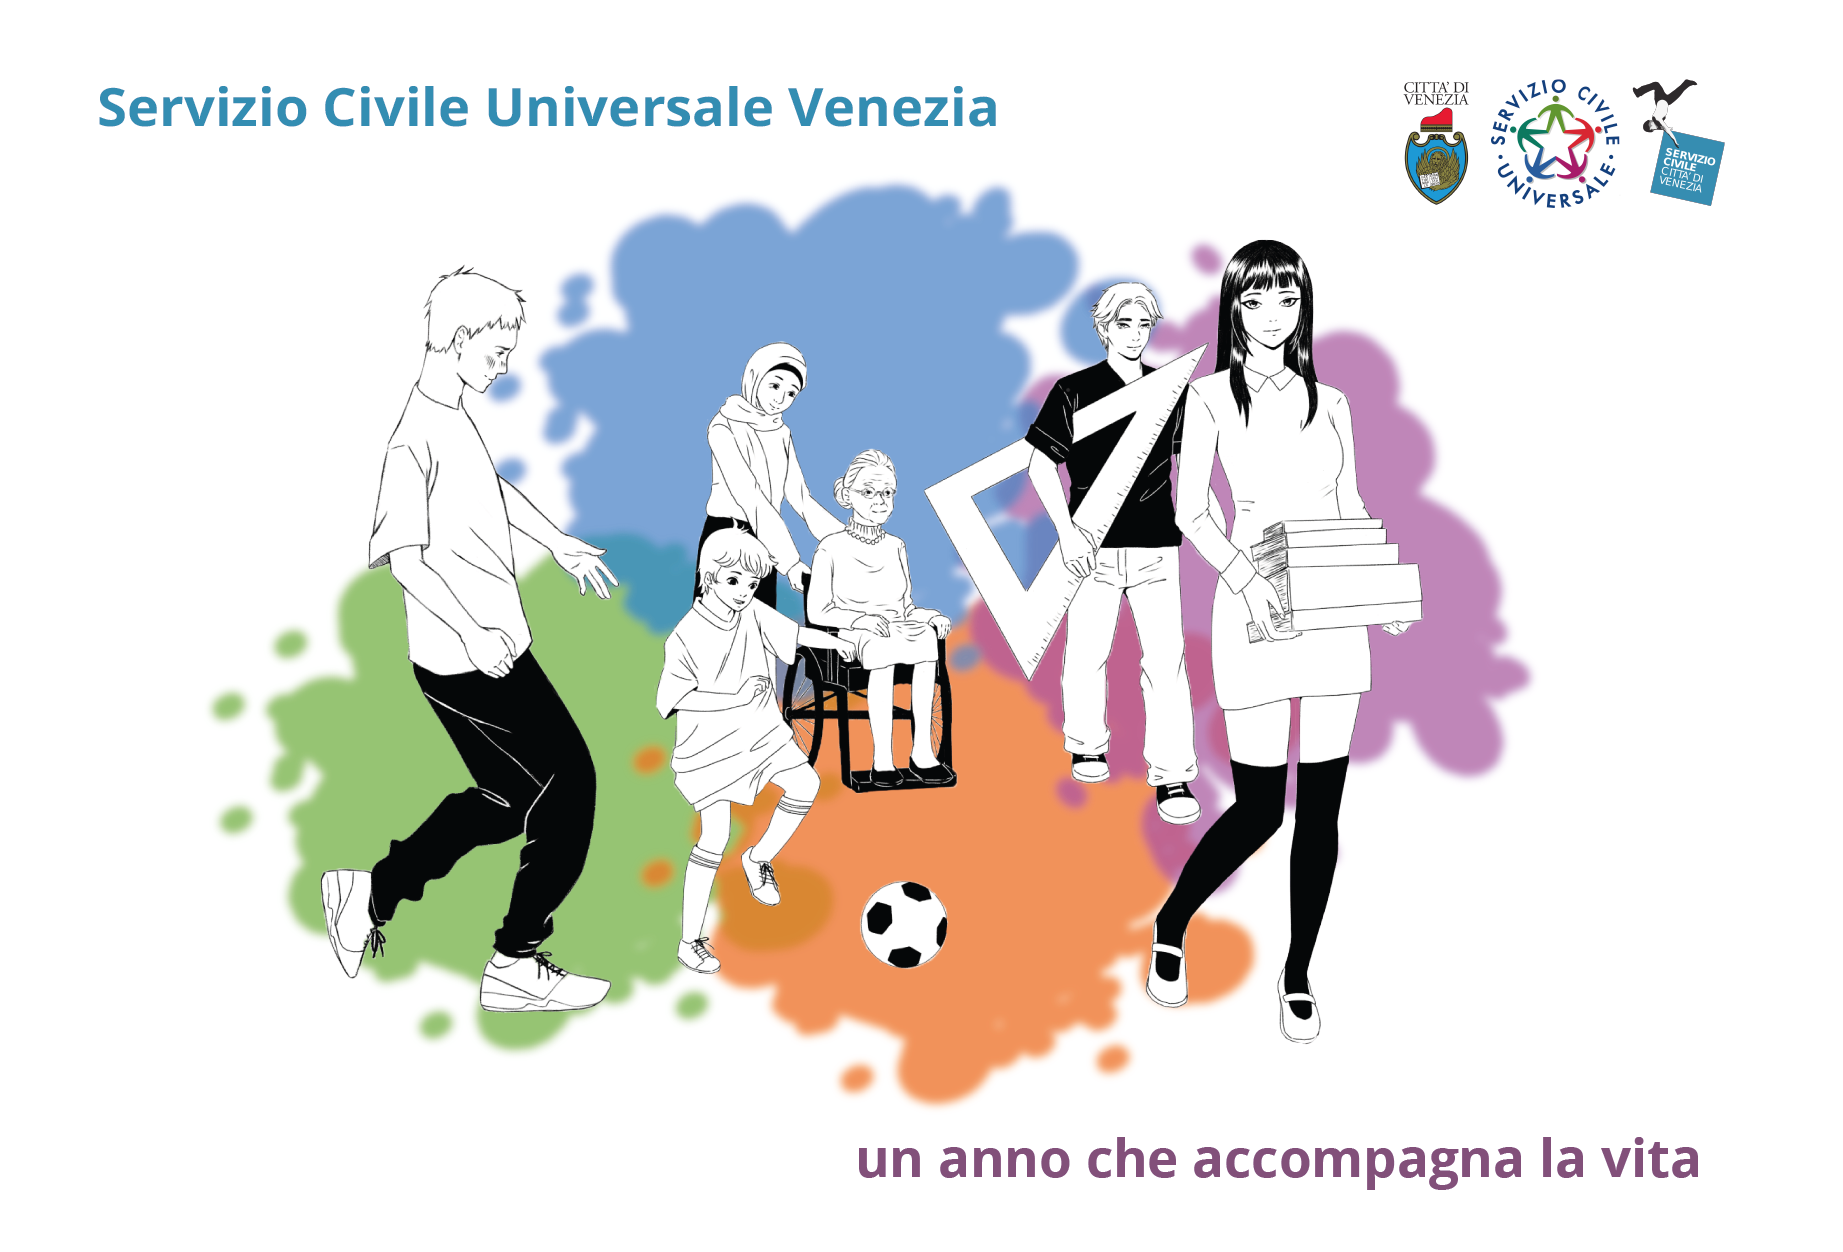 Servizio Civile Universale Venezia: un anno che accompagna la vita. Illustrazione di Kan Le Norcen che raffigura i quattro ambiti del Servizio Civile: assistenza, educazione, ambiente e cultura.